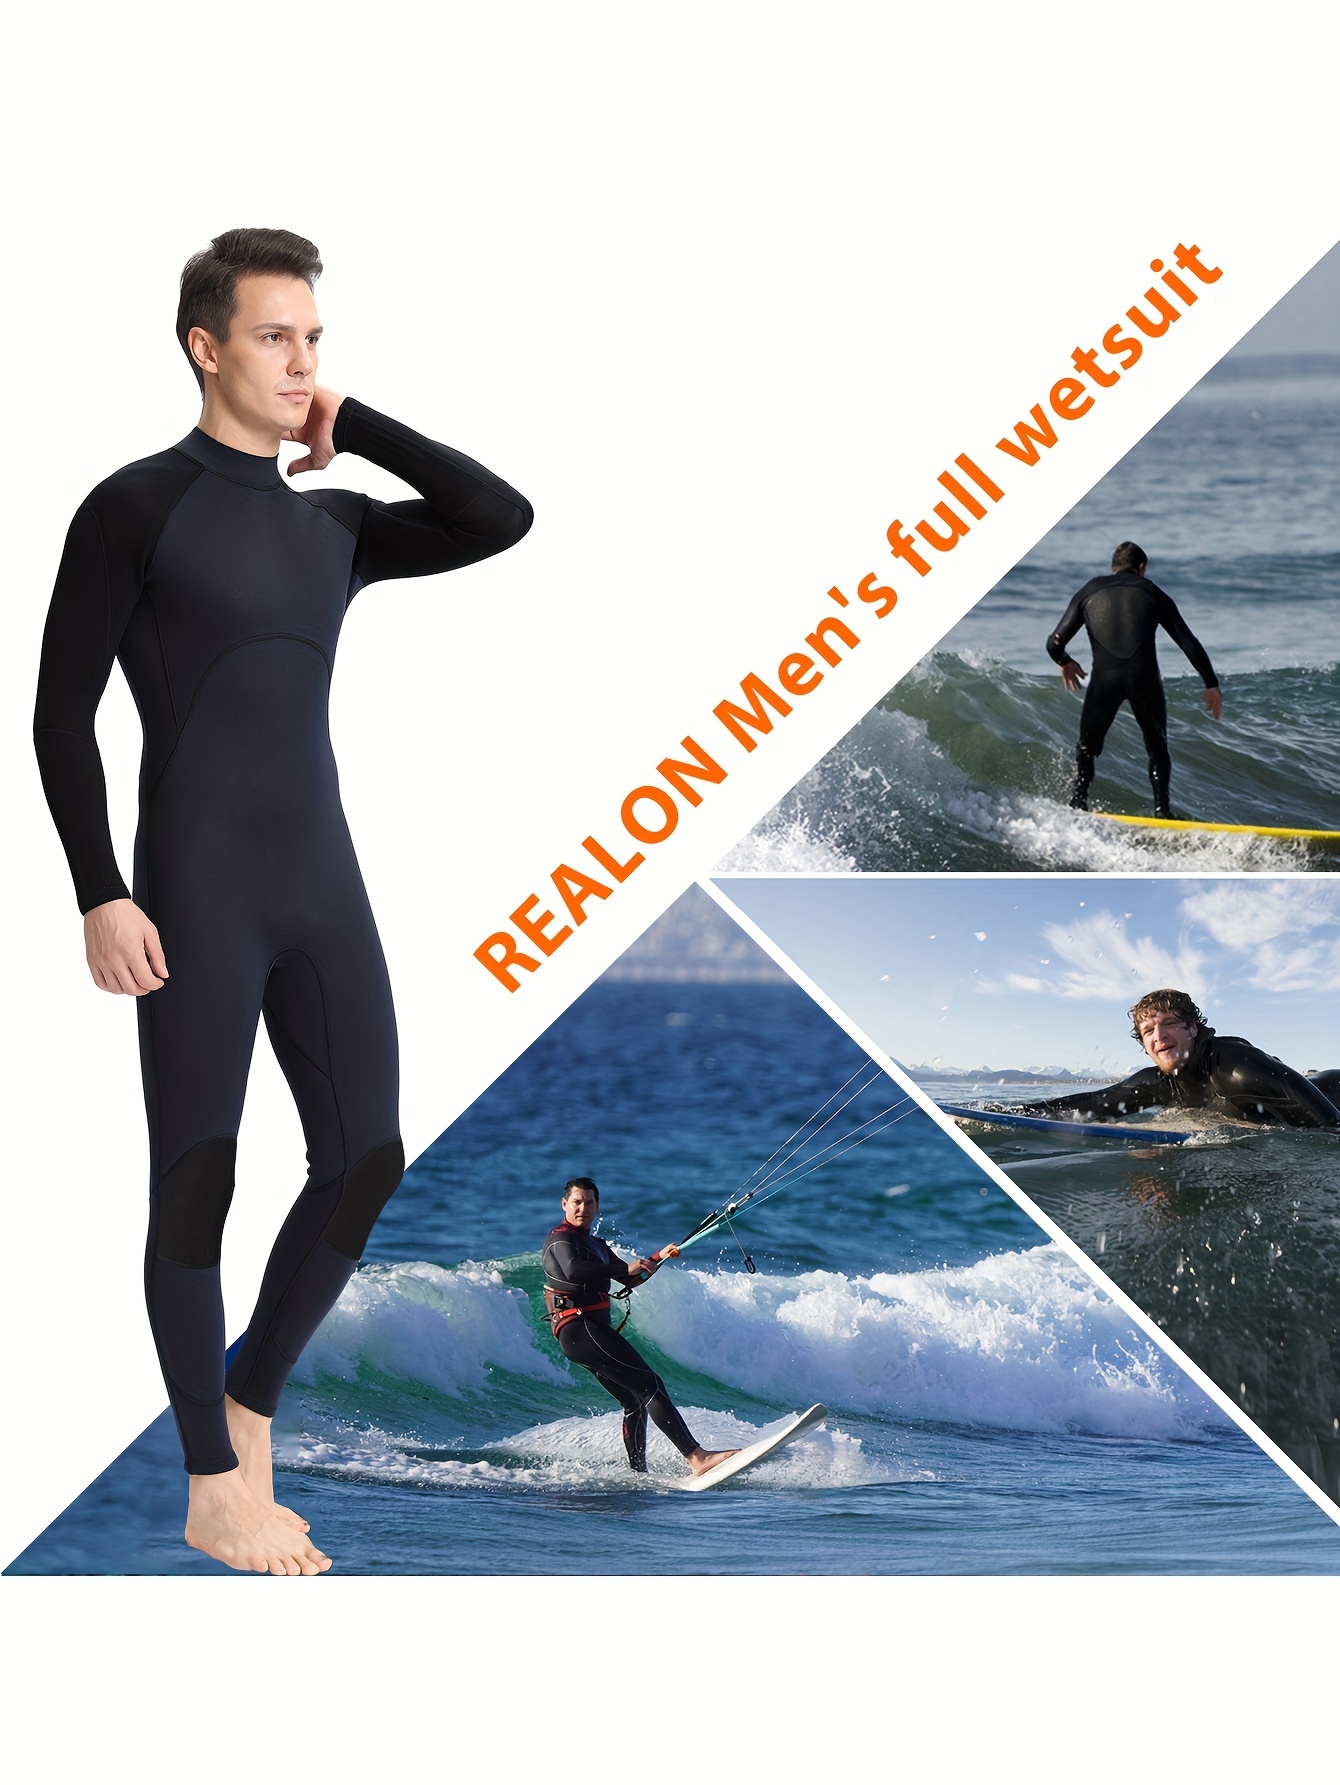  REALON Wetsuit Women Neoprene Wet Suits 3mm Full